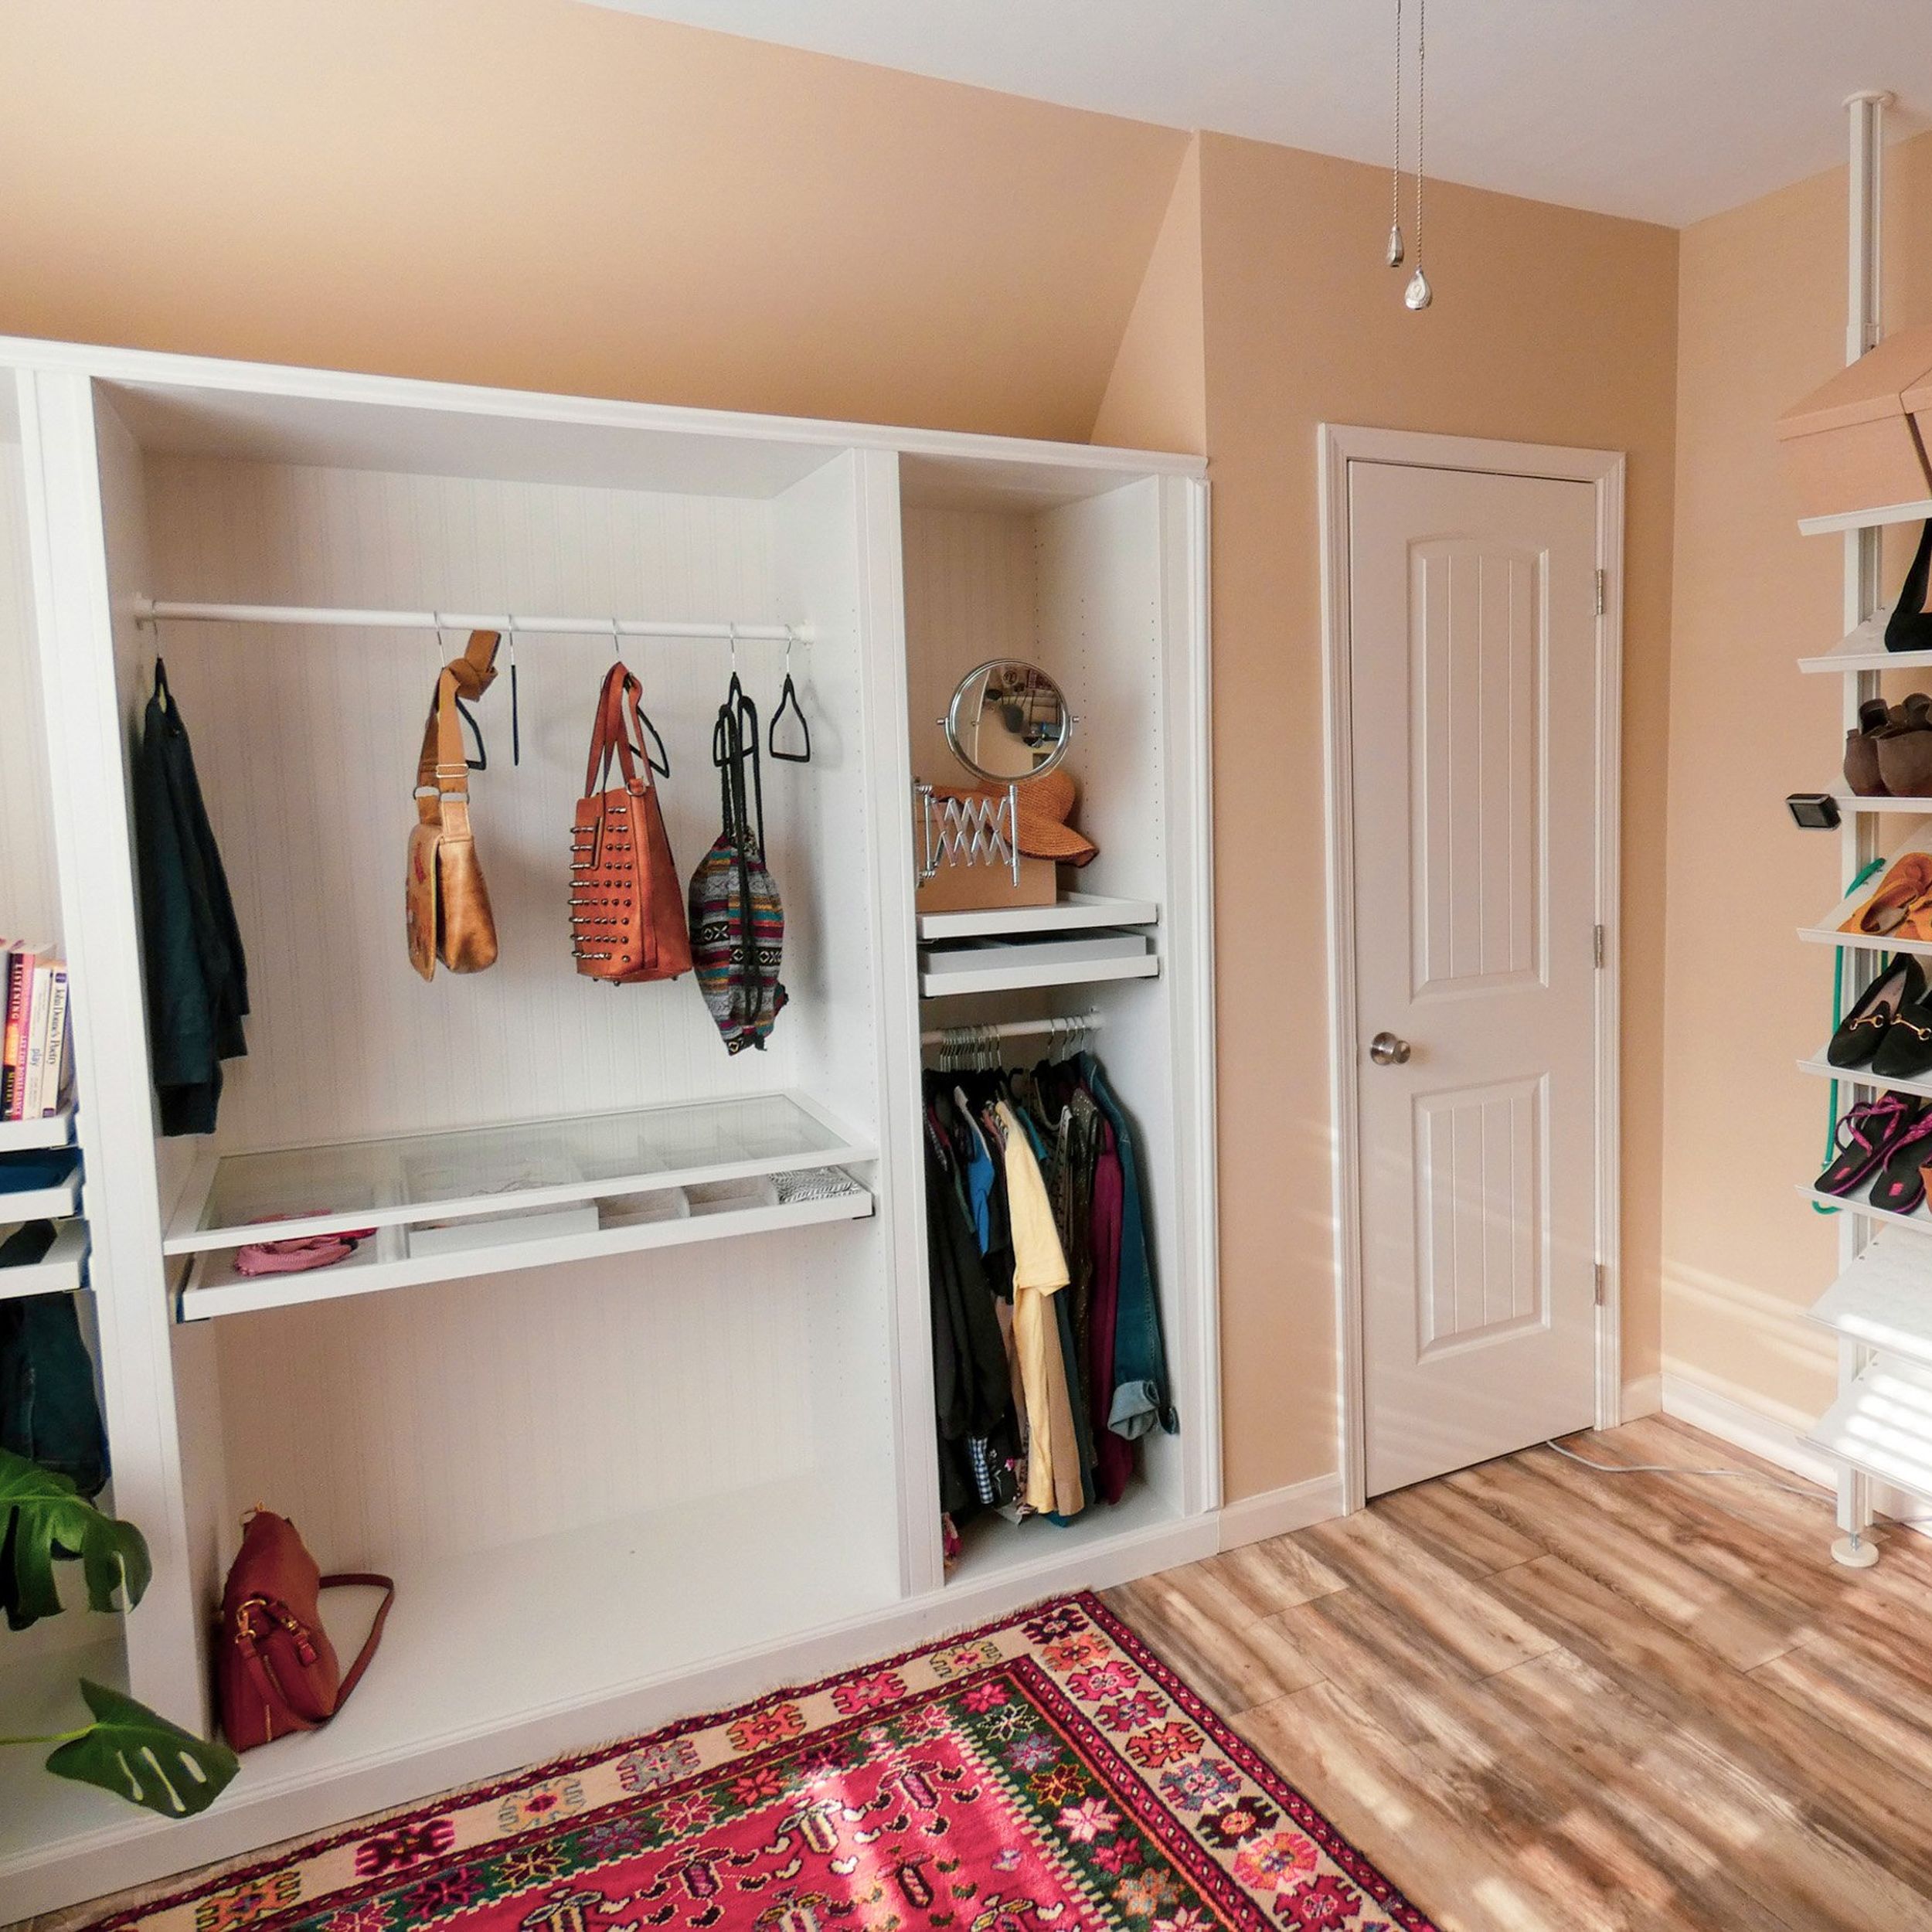 Dream wardrobe in a small space